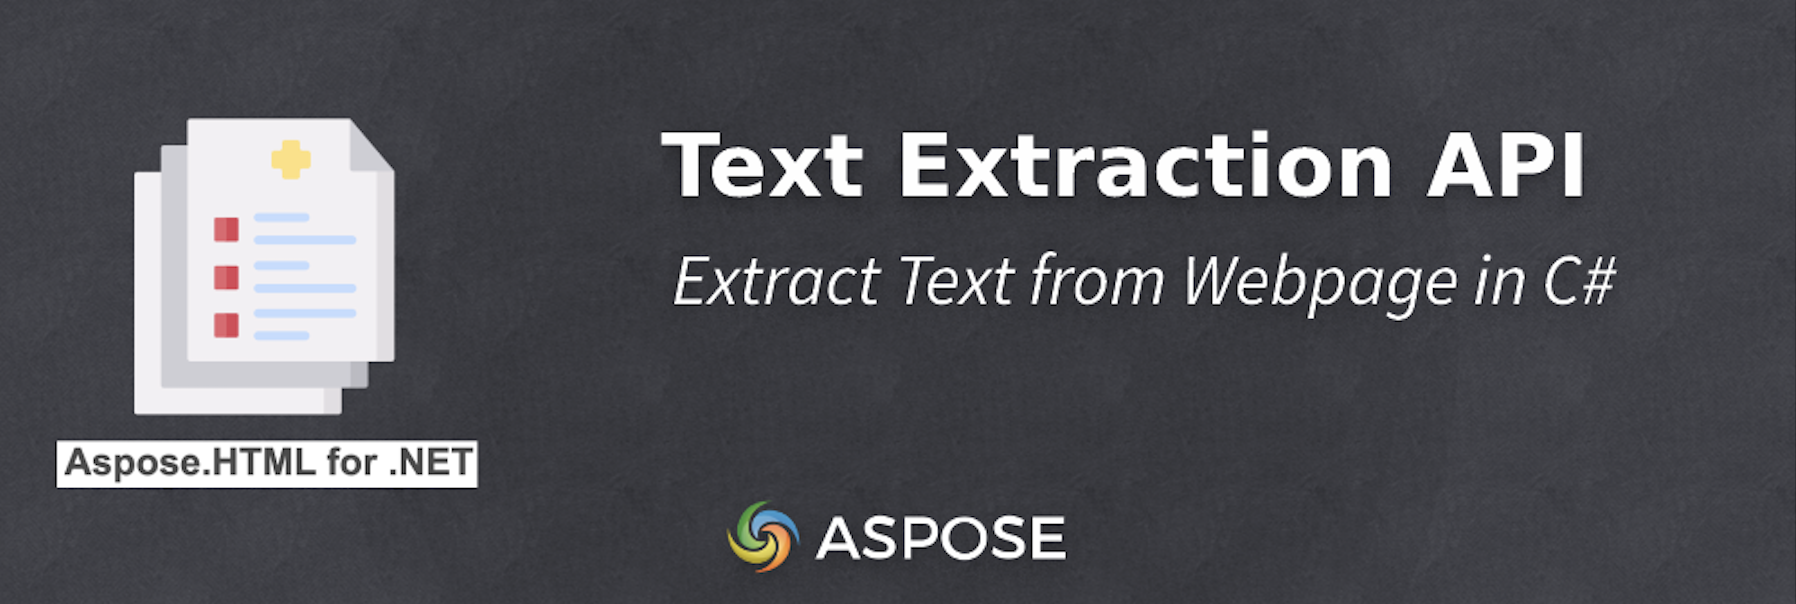 Extraire le texte d'une page Web en C# - API d'extraction de texte